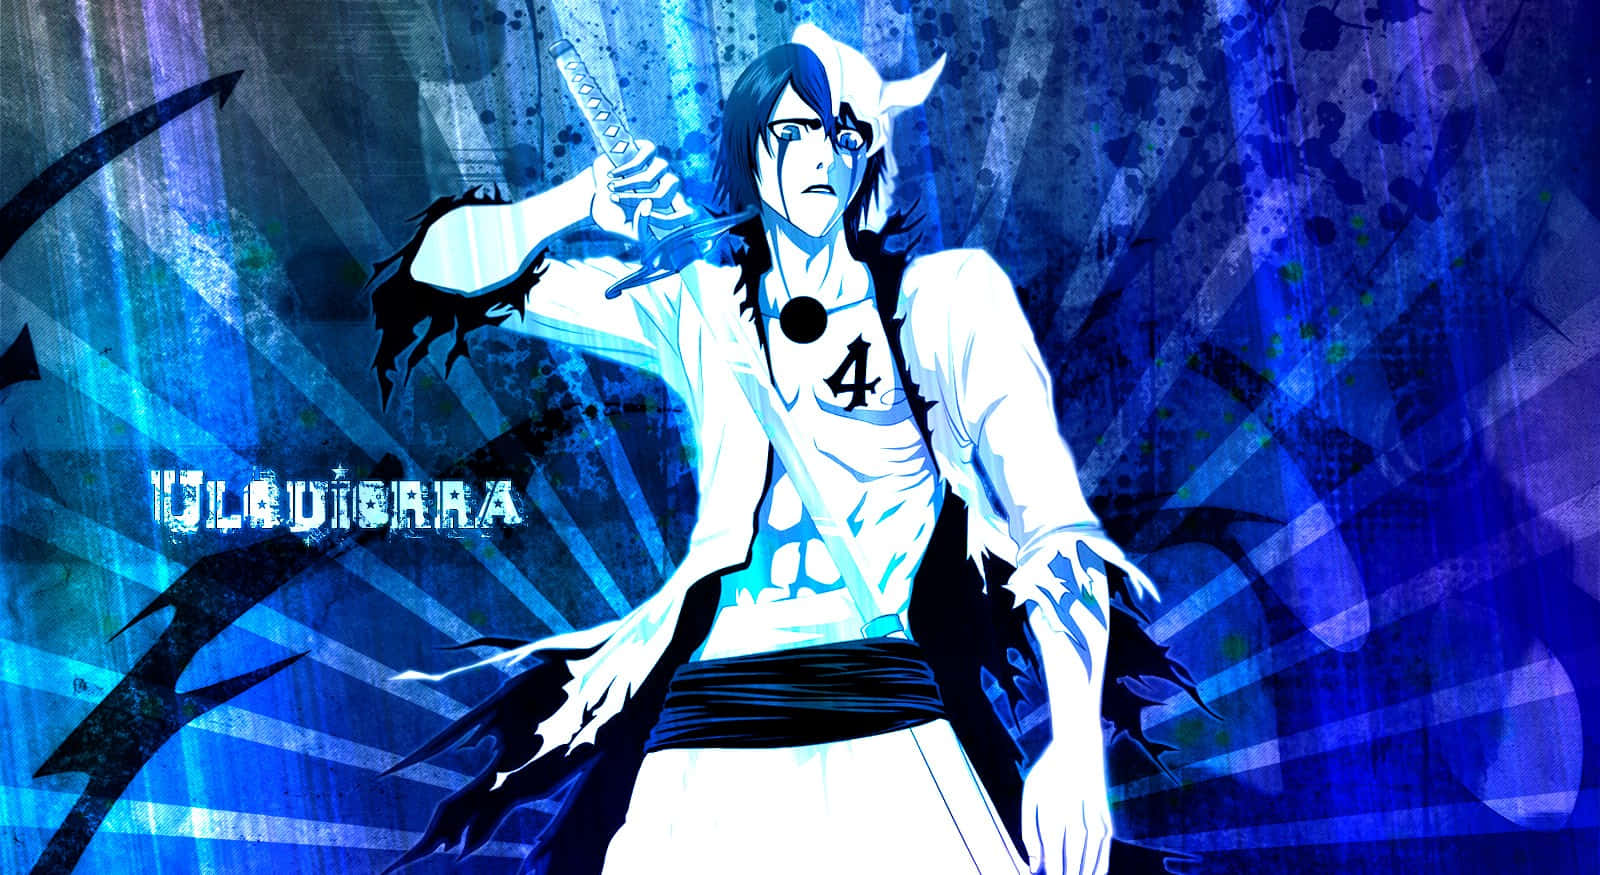 Ulquiorra Cifer, a powerful Arrancar in the anime Bleach Wallpaper